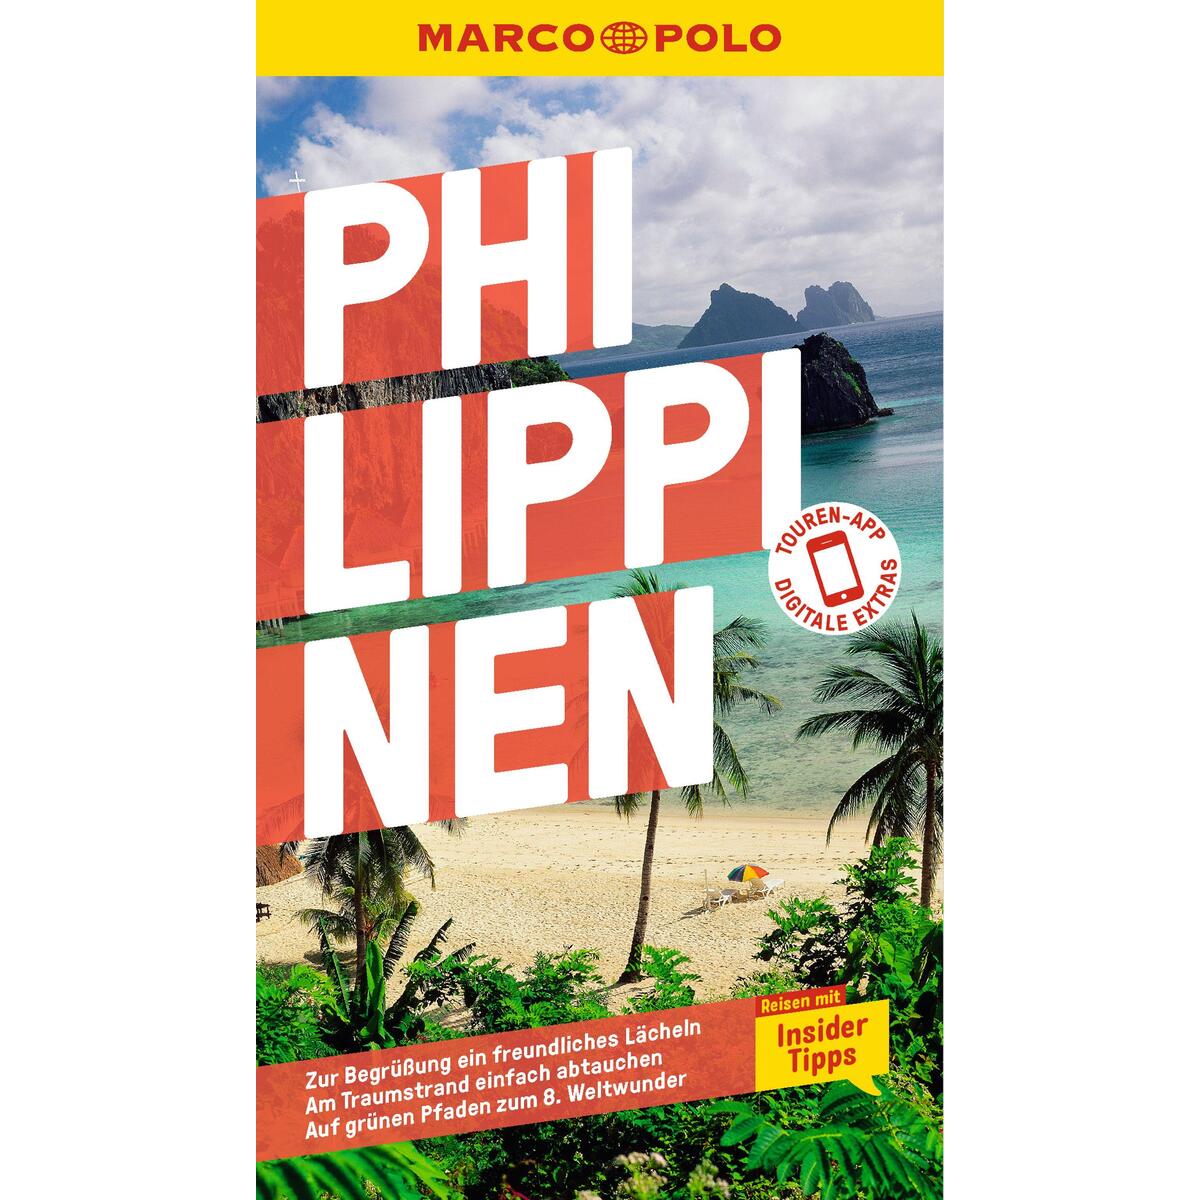 MARCO POLO Reiseführer Philippinen von Mairdumont